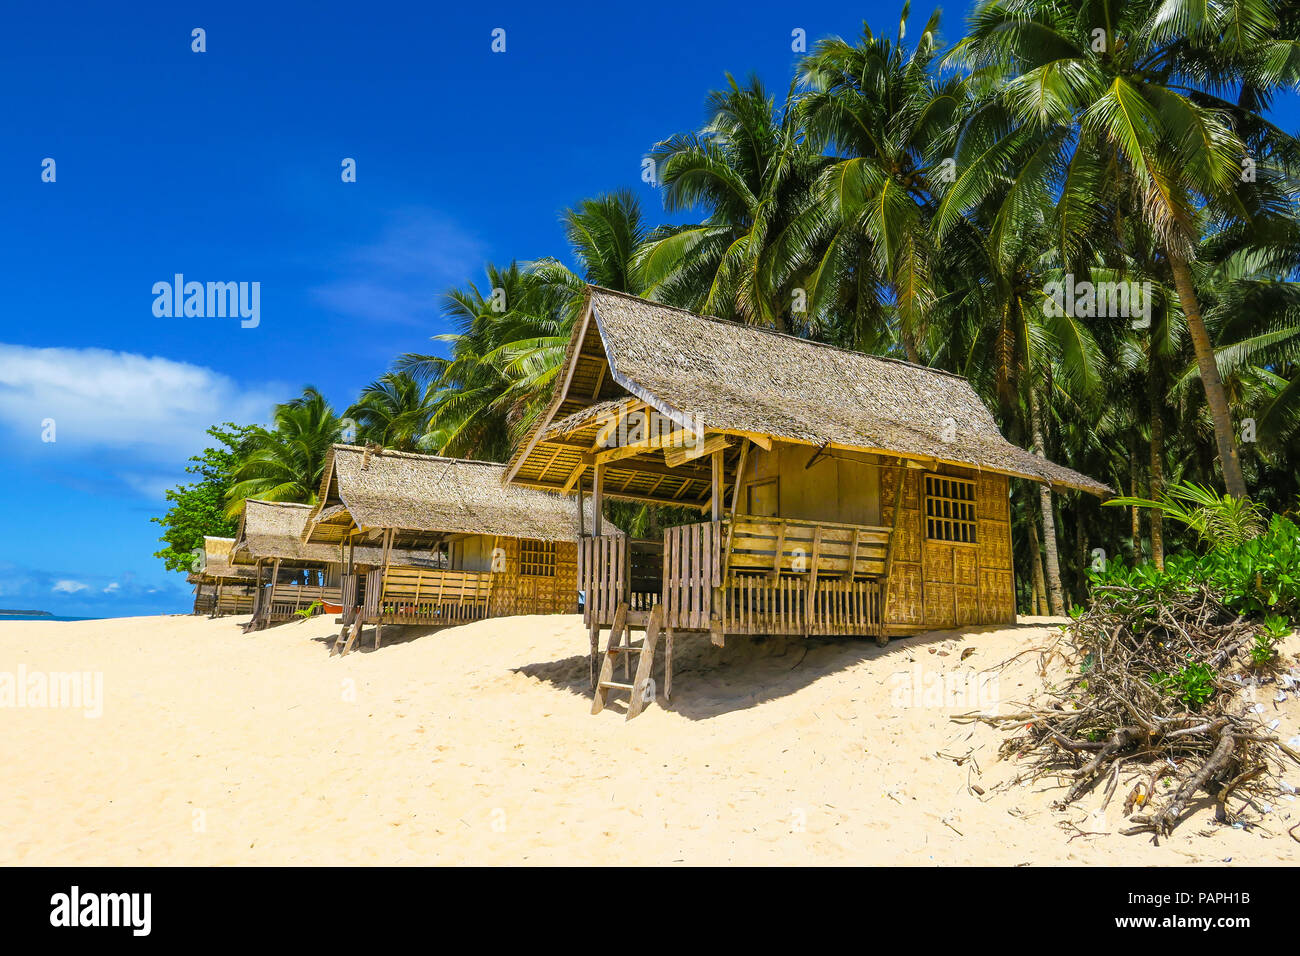 Bambus Strand Hütten im tropischen Paradies mit Palmen und weißem Sand-daku Insel Siargao - Philippinen Stockfoto